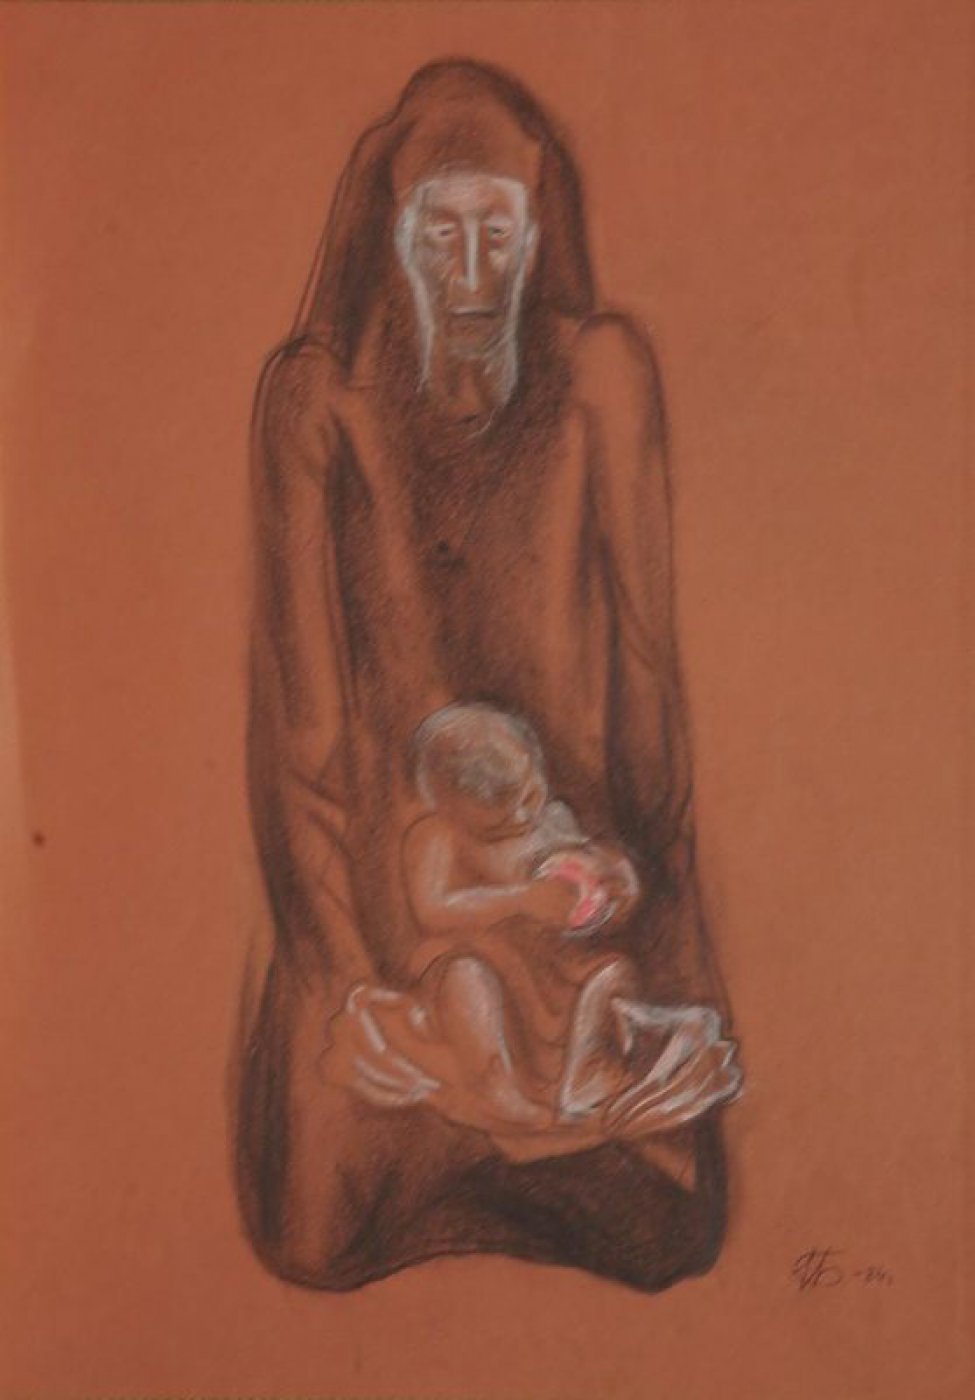 Изображена анфас сидящая на коленях старуха с ребенком.